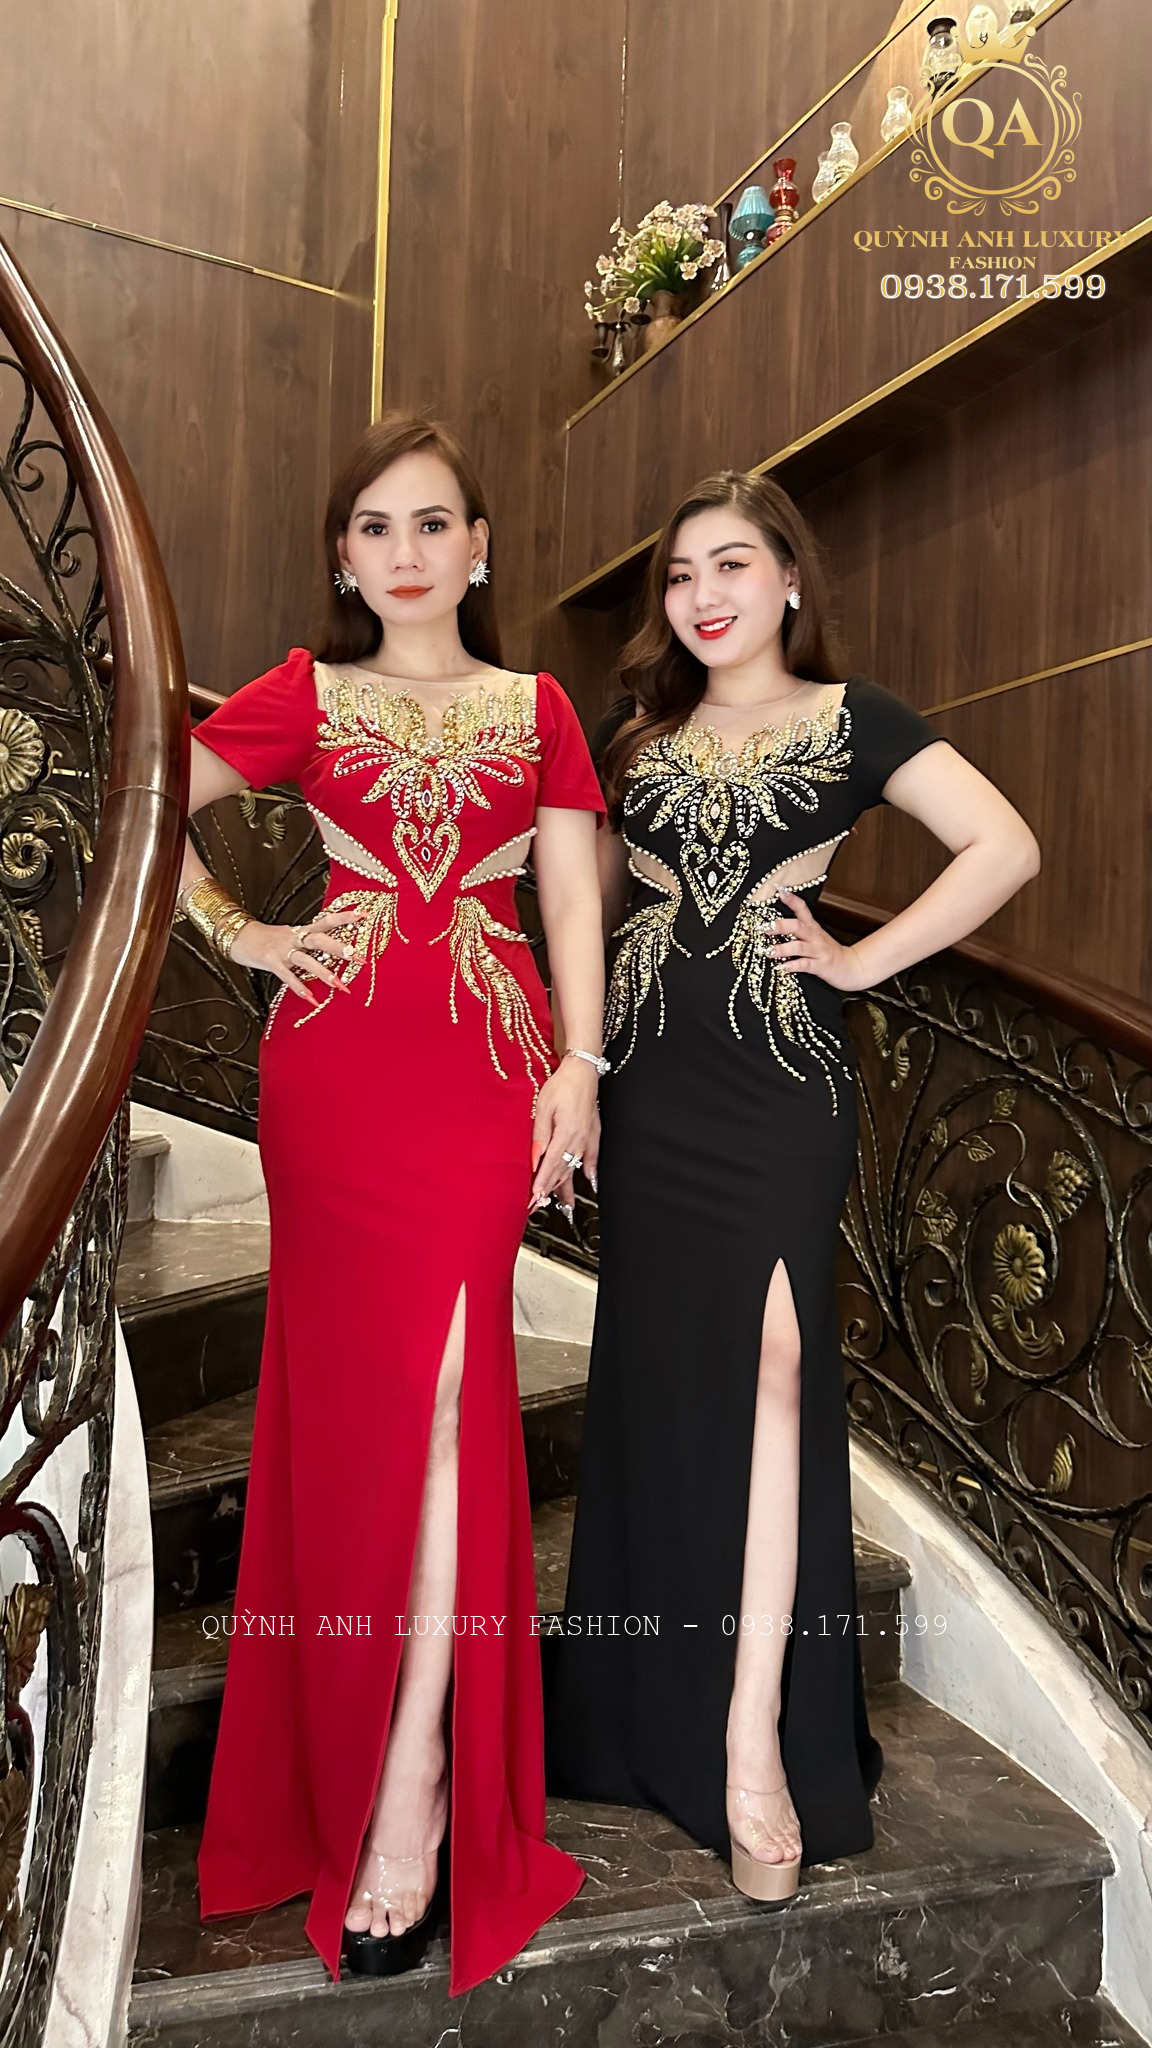 Đẳng cấp của các mẫu đầm dạ hội bà sui của Quỳnh Anh Luxury